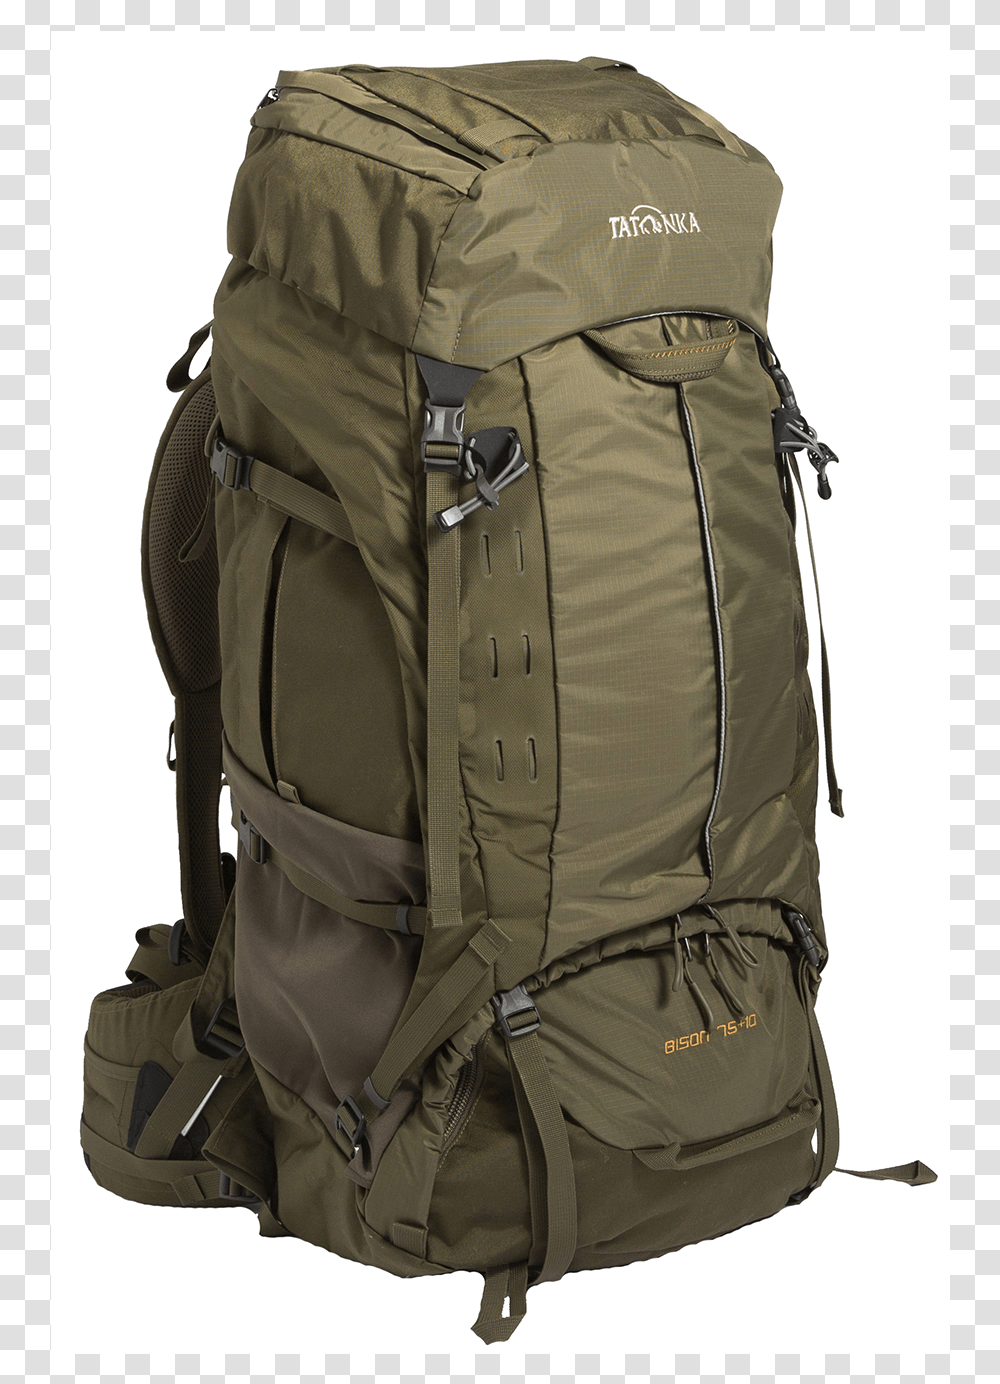 Tatonka Bison 75 10l Backpack Backpack, Bag Transparent Png